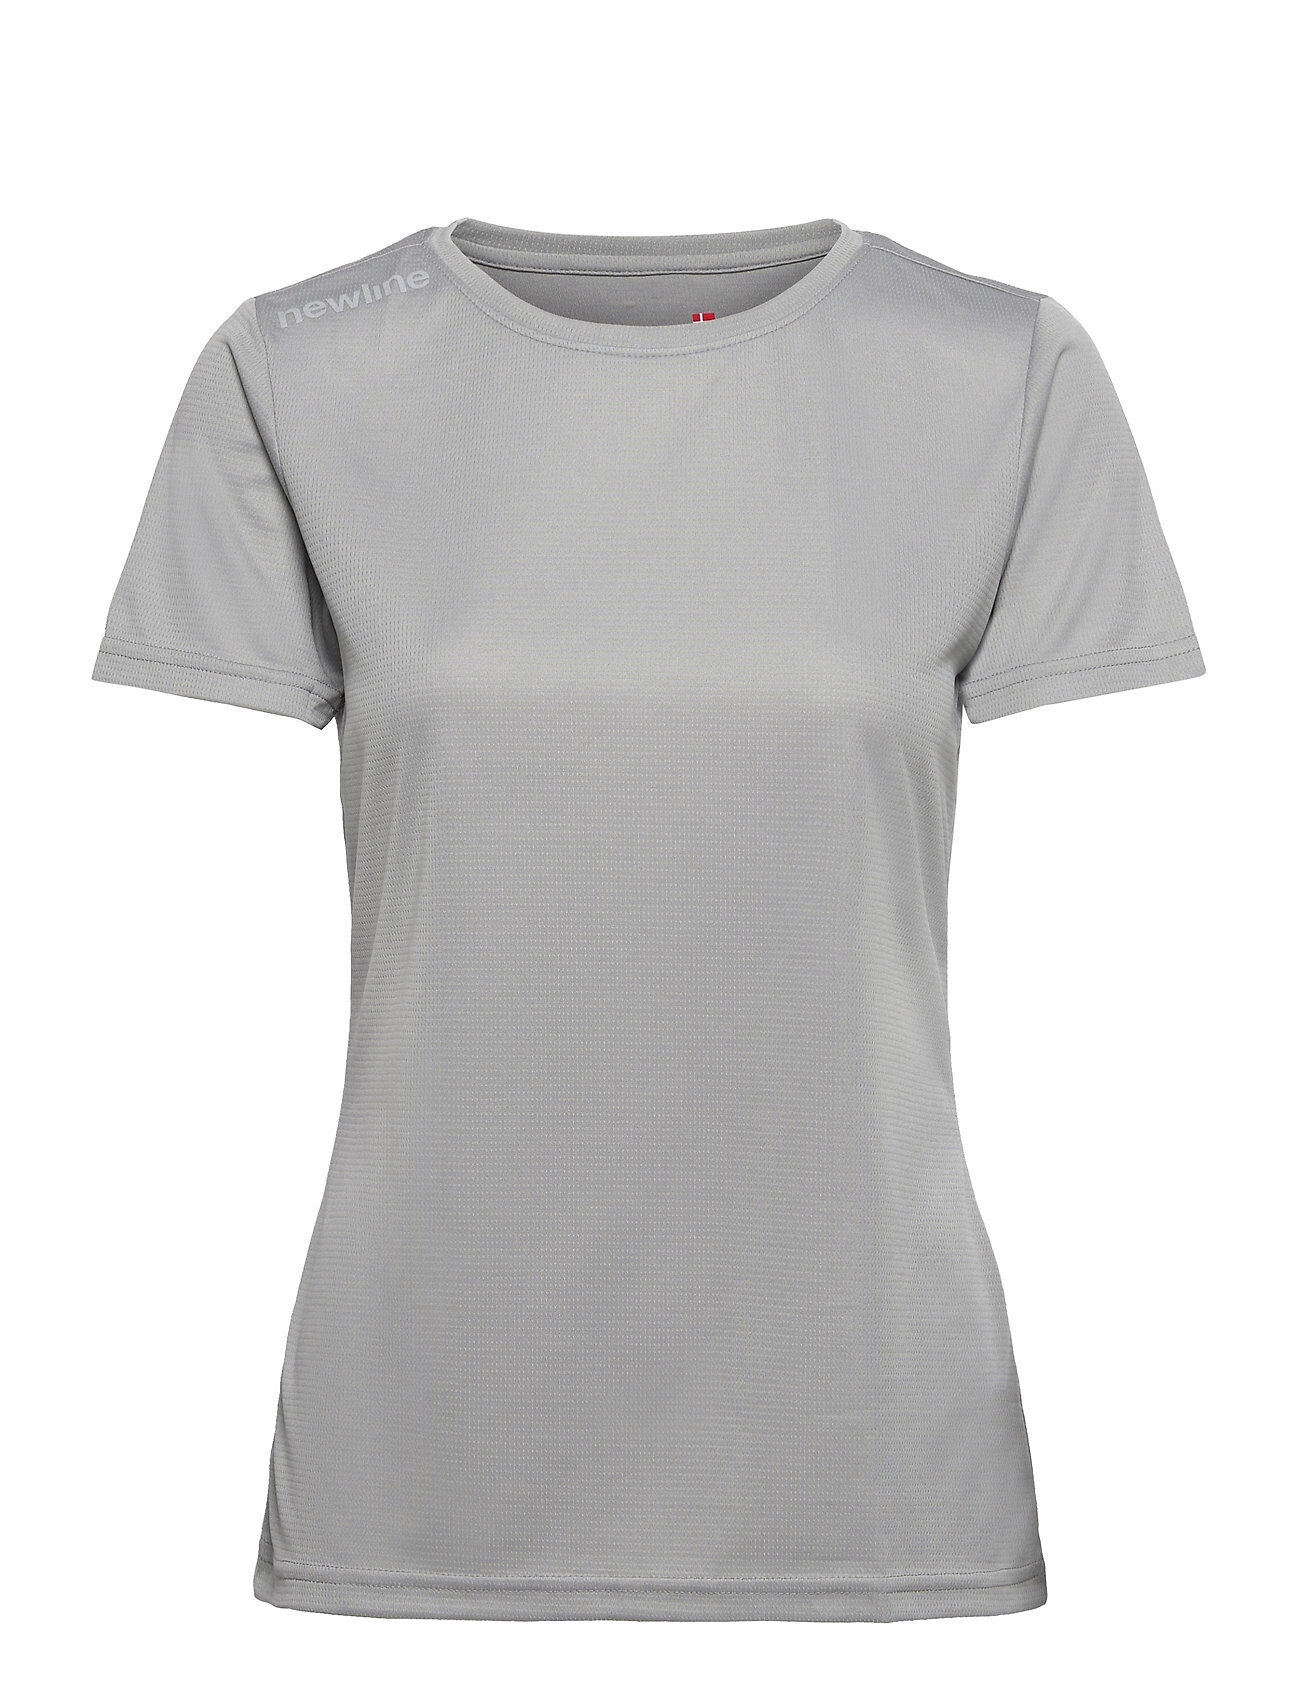 Newline Women Core Functional T-Shirt S/S T-shirts & Tops Short-sleeved Grå Newline